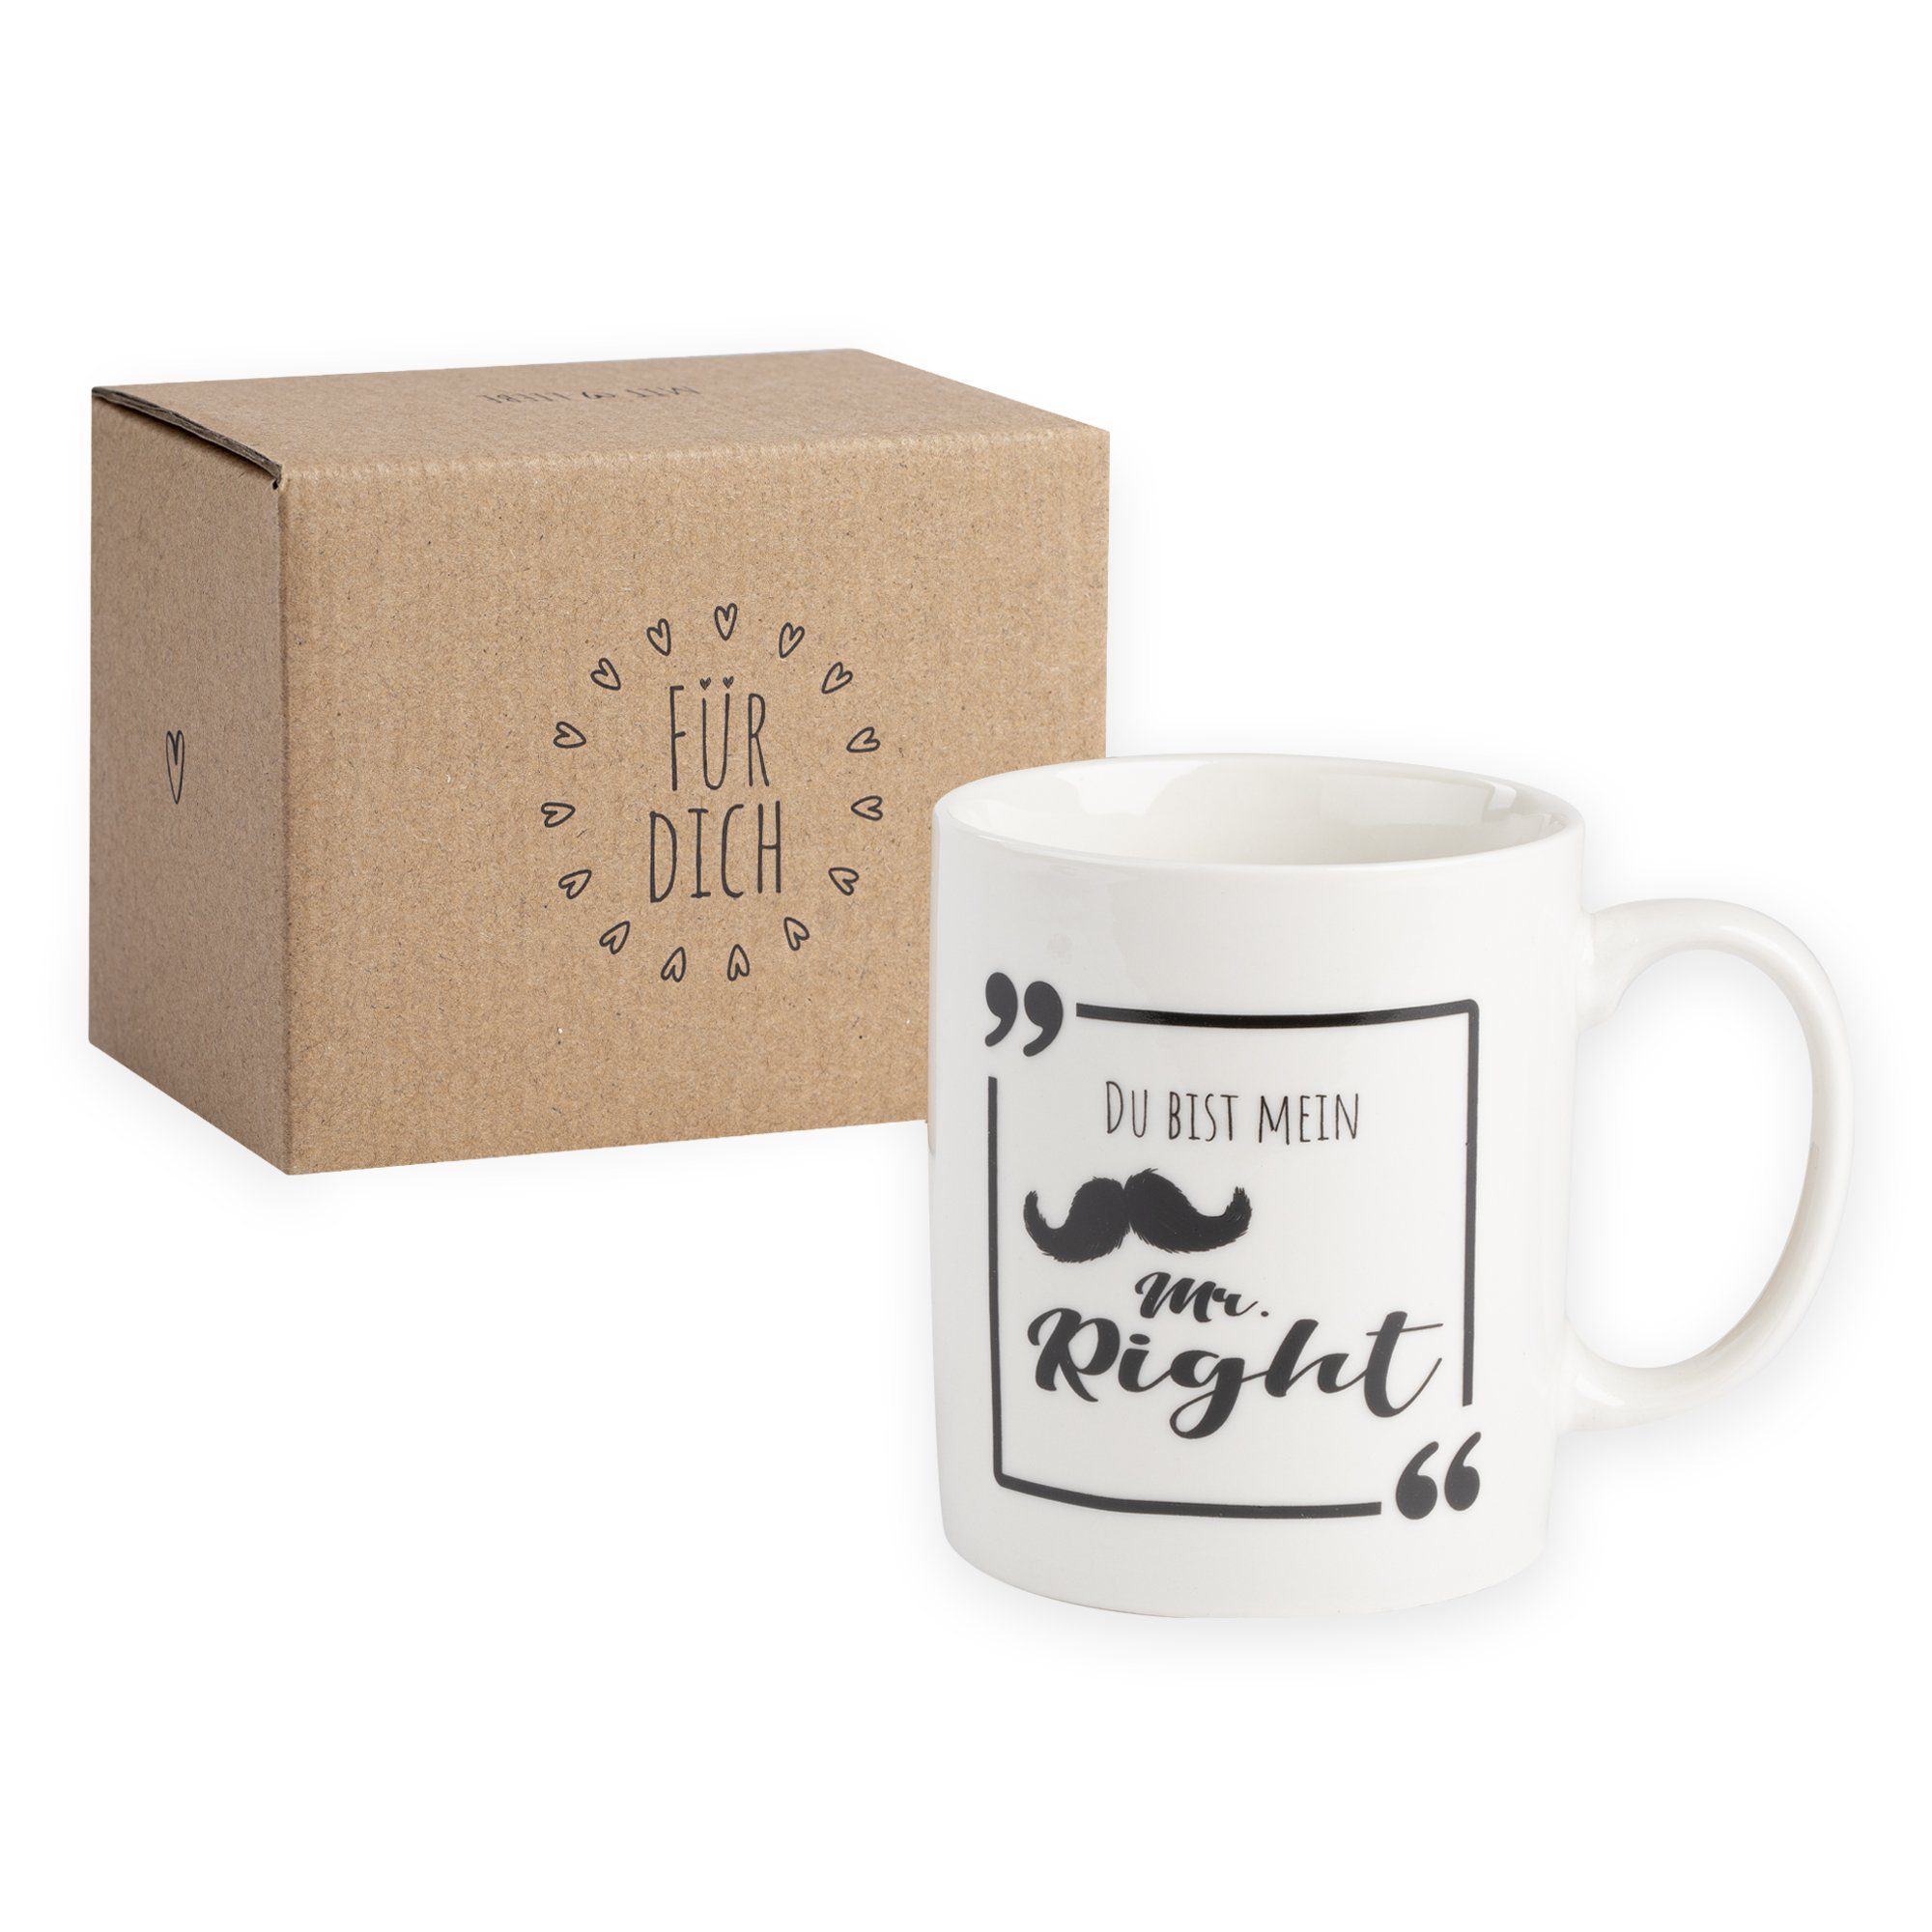 ILP Tasse Kaffeetasse mit Spruch für deinen Schatz, Keramik | Tassen